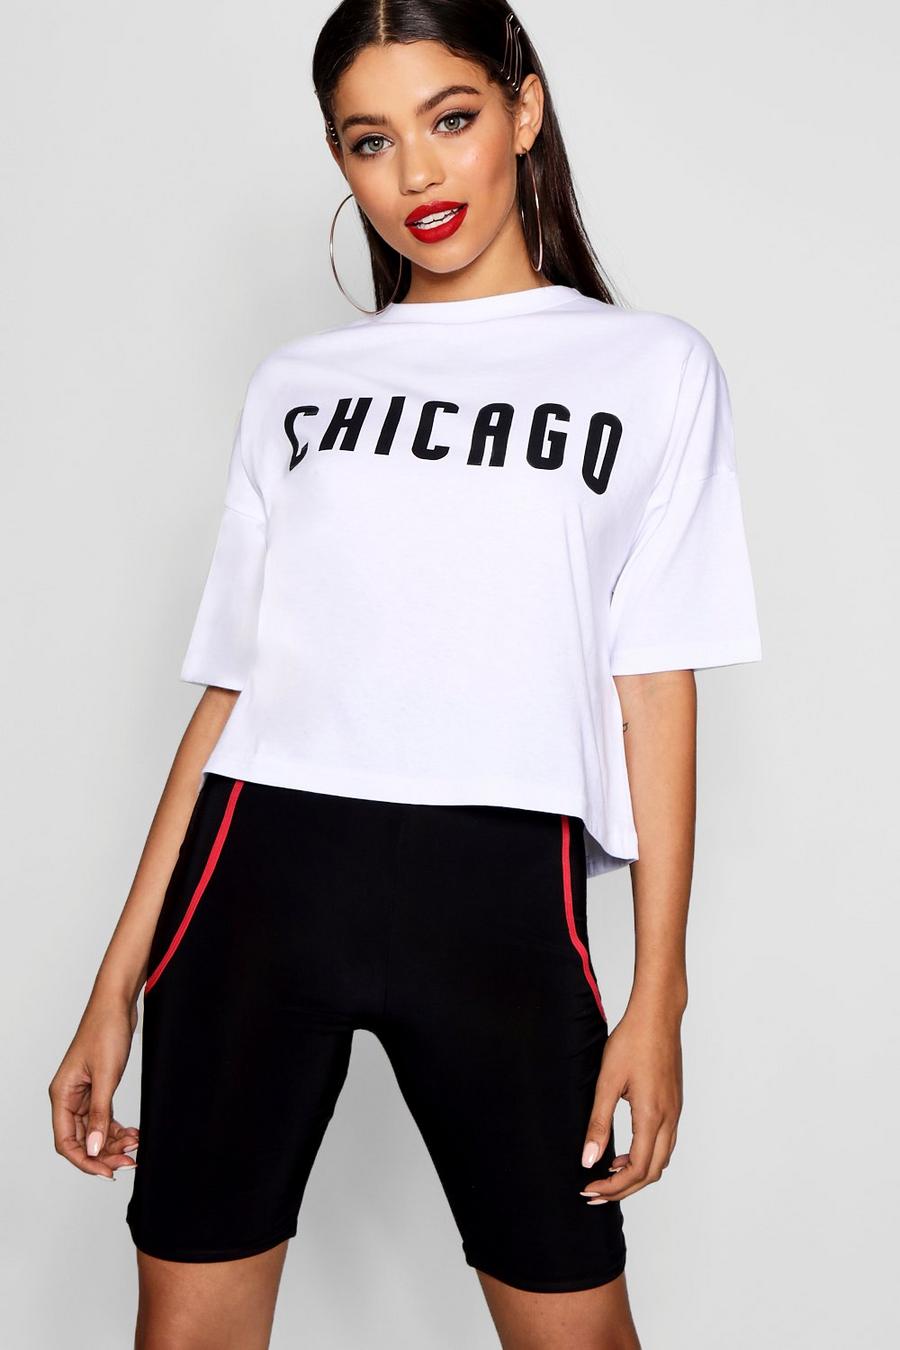 Camiseta con eslogan “Chicago” image number 1